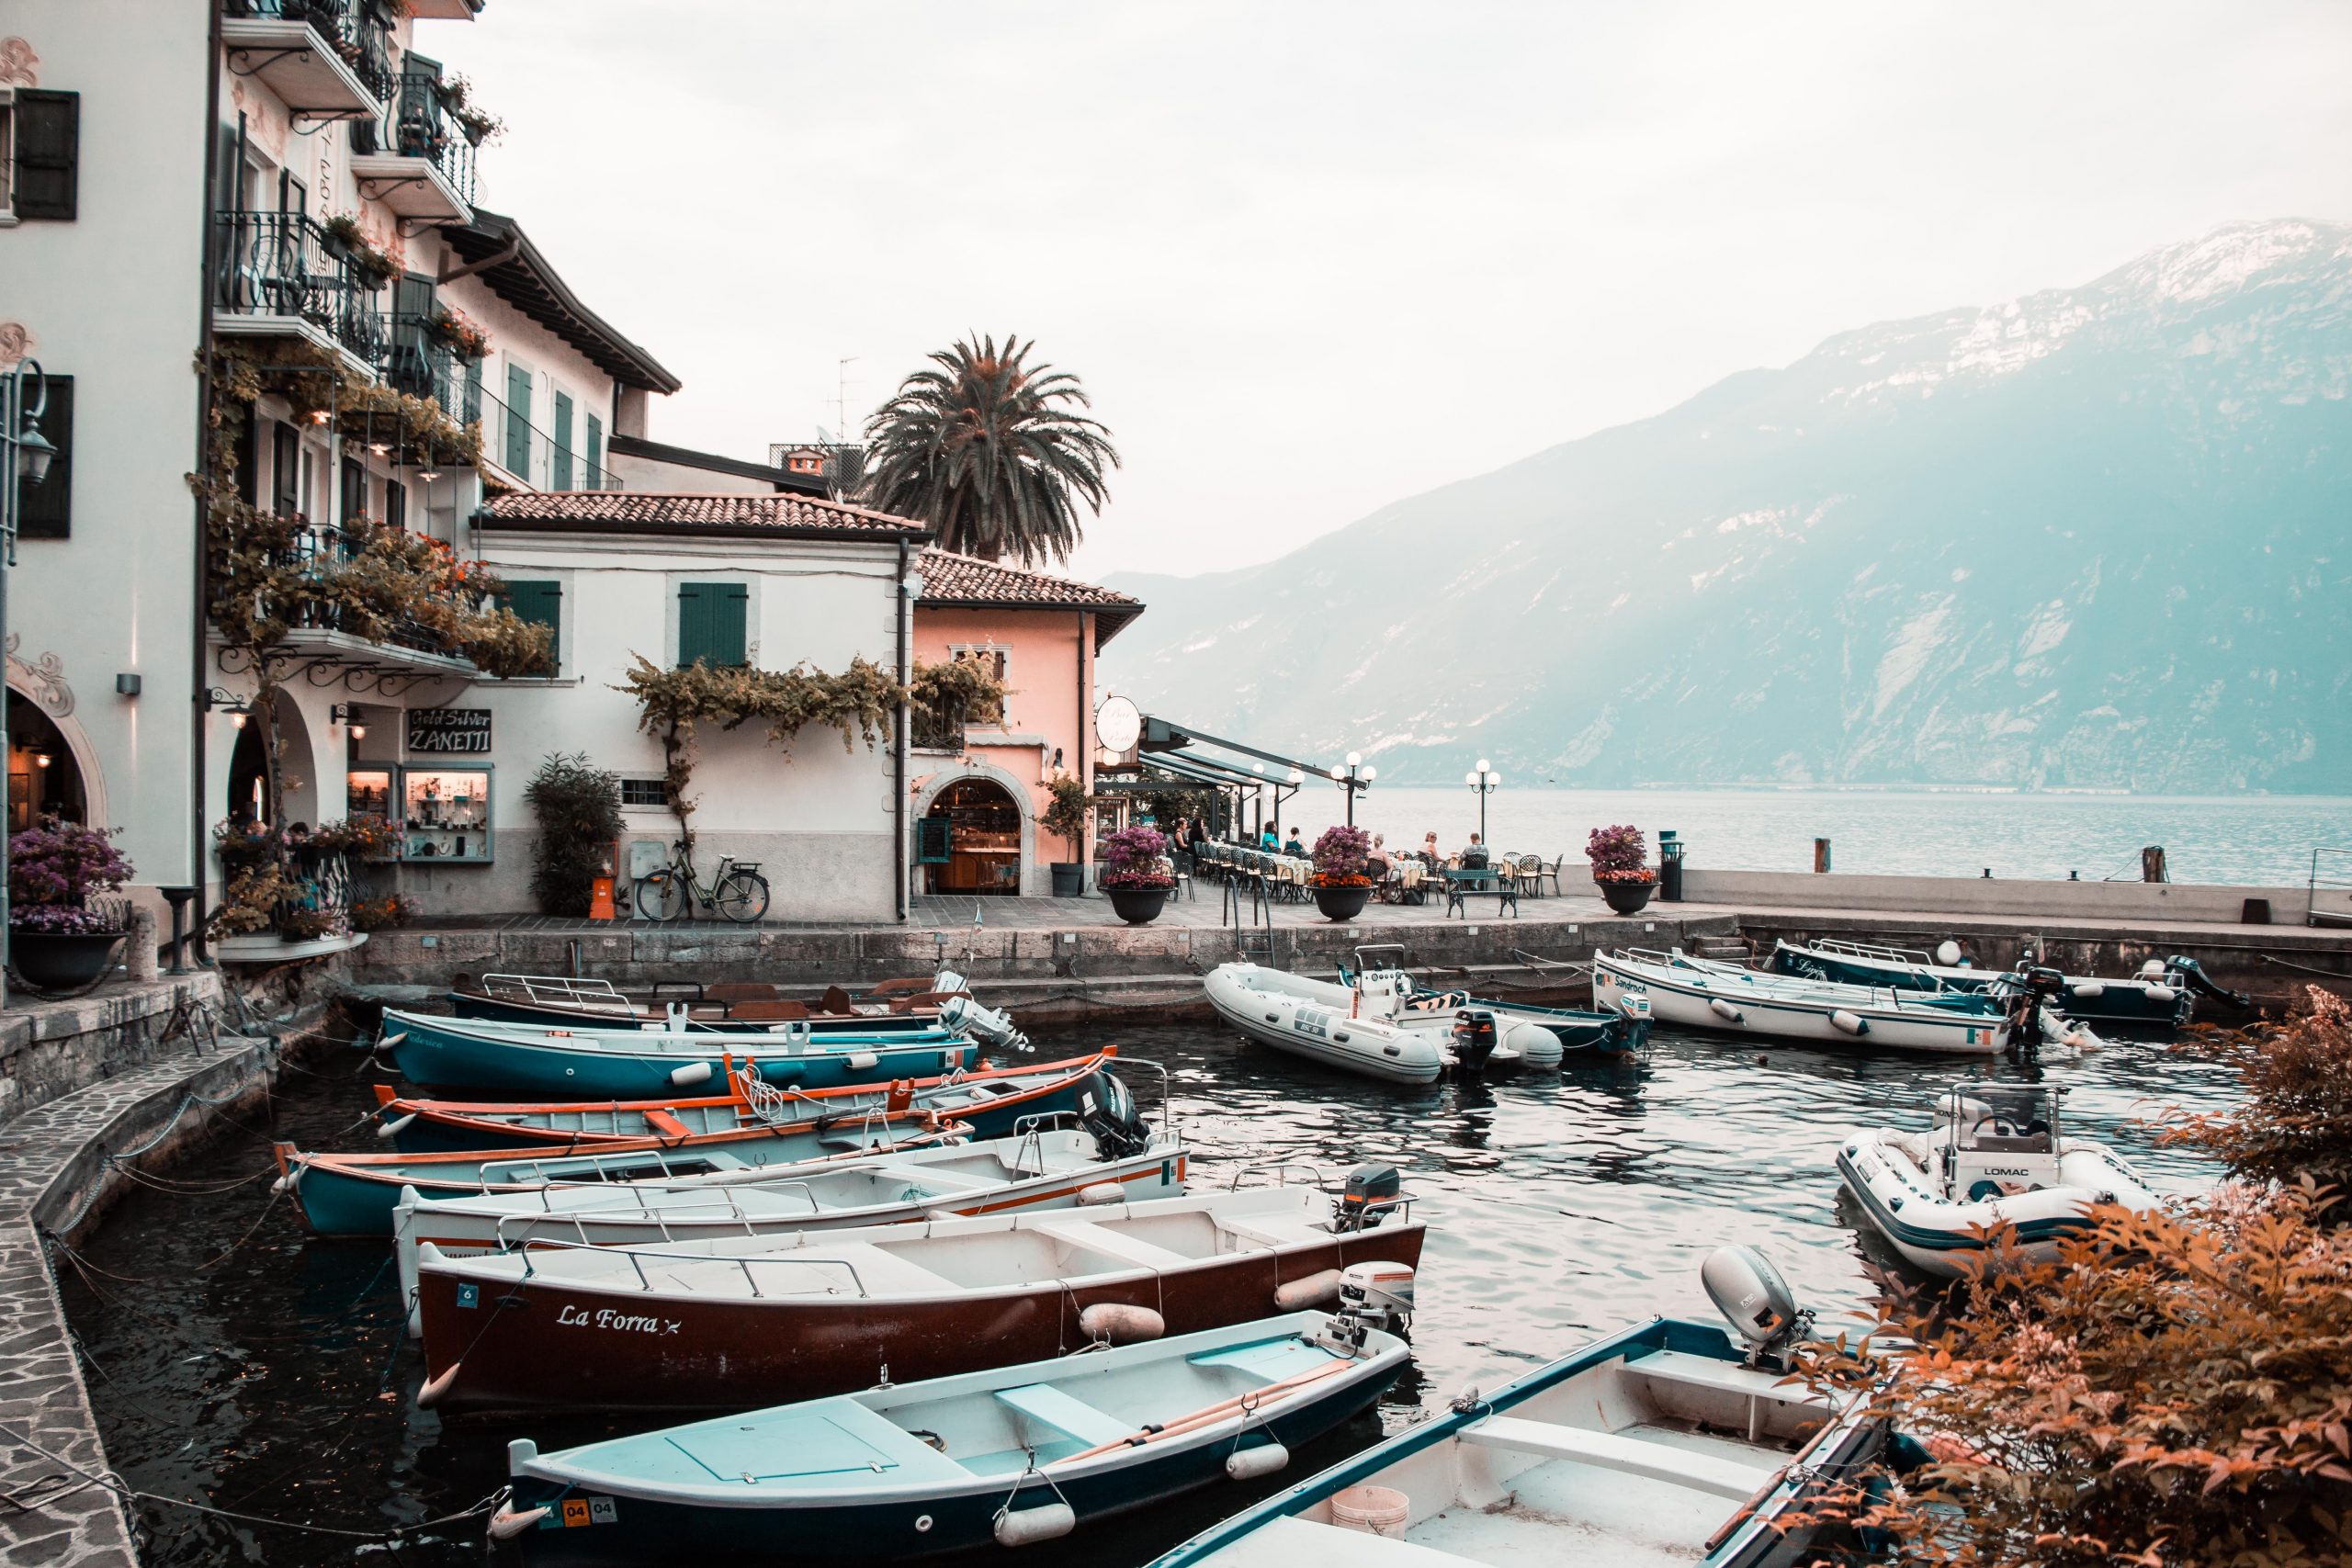 Lake Garda, Italy - Europe's 10 Most Stunning Lakes